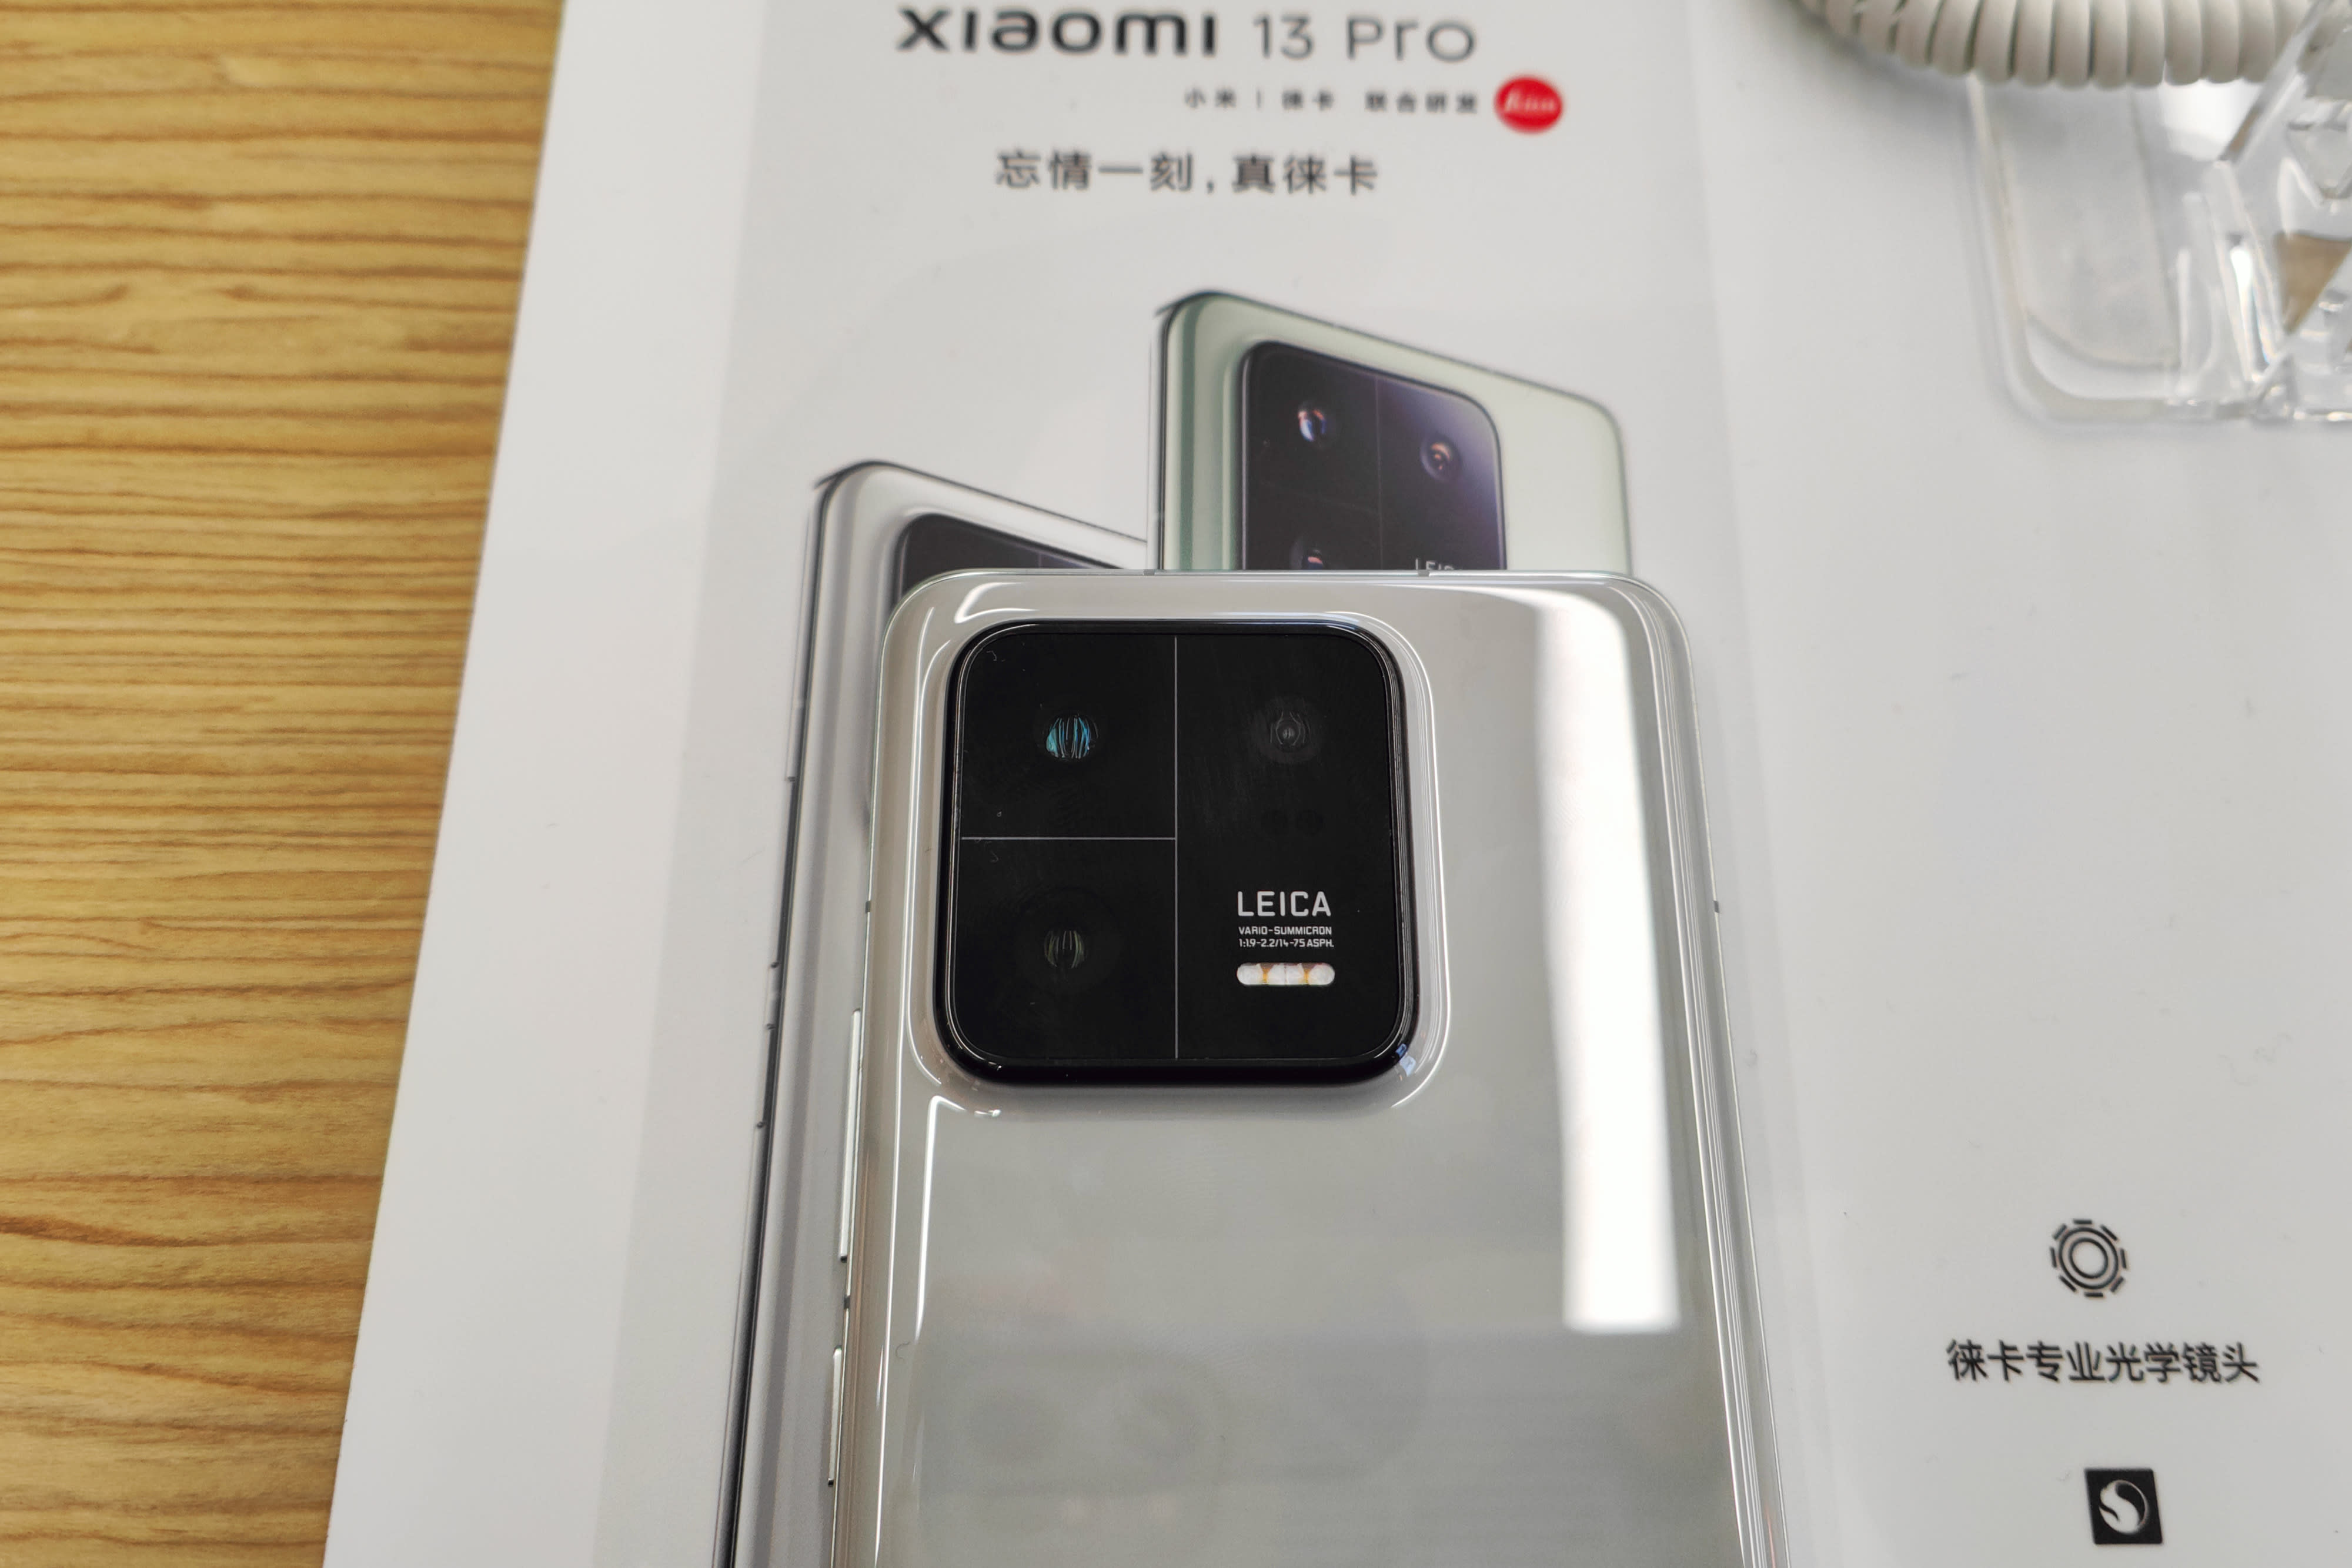 Xiaomi 13 Pro gestartet: Spezifikationen, Preis und Verfügbarkeit